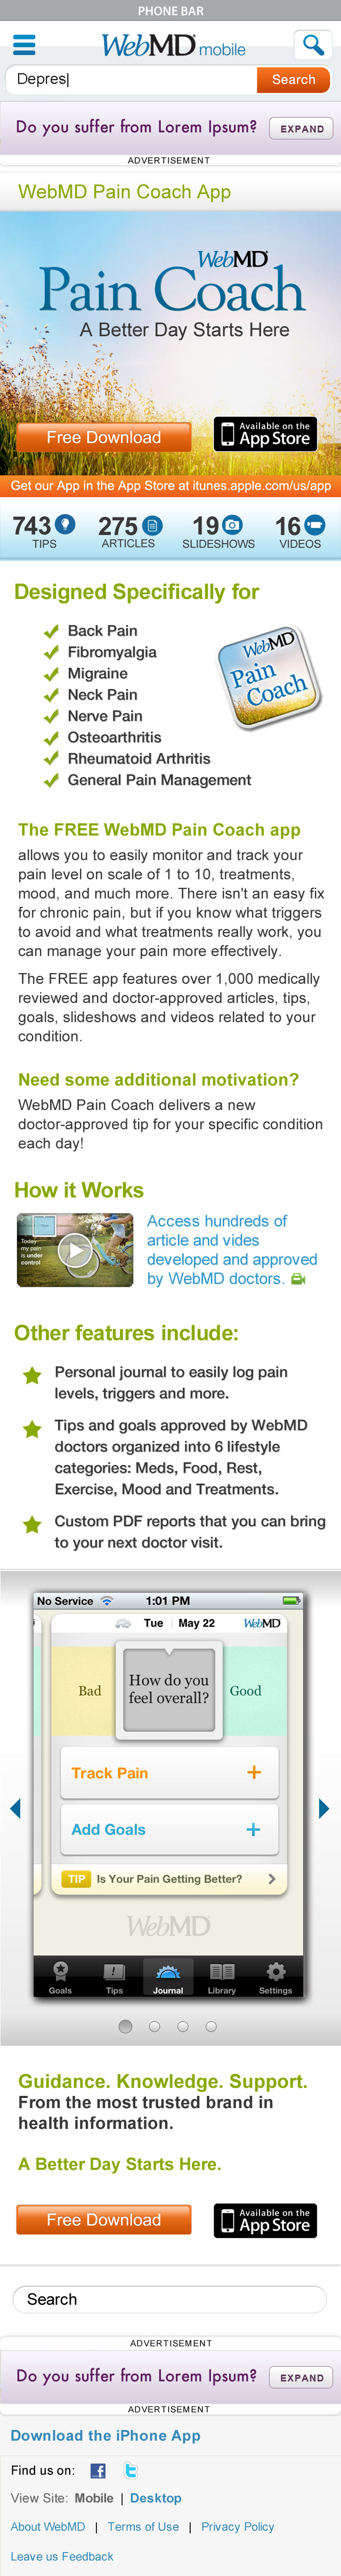 Mobile app pain coach  webmd chronic pain iphone app apple mobile product managemenr